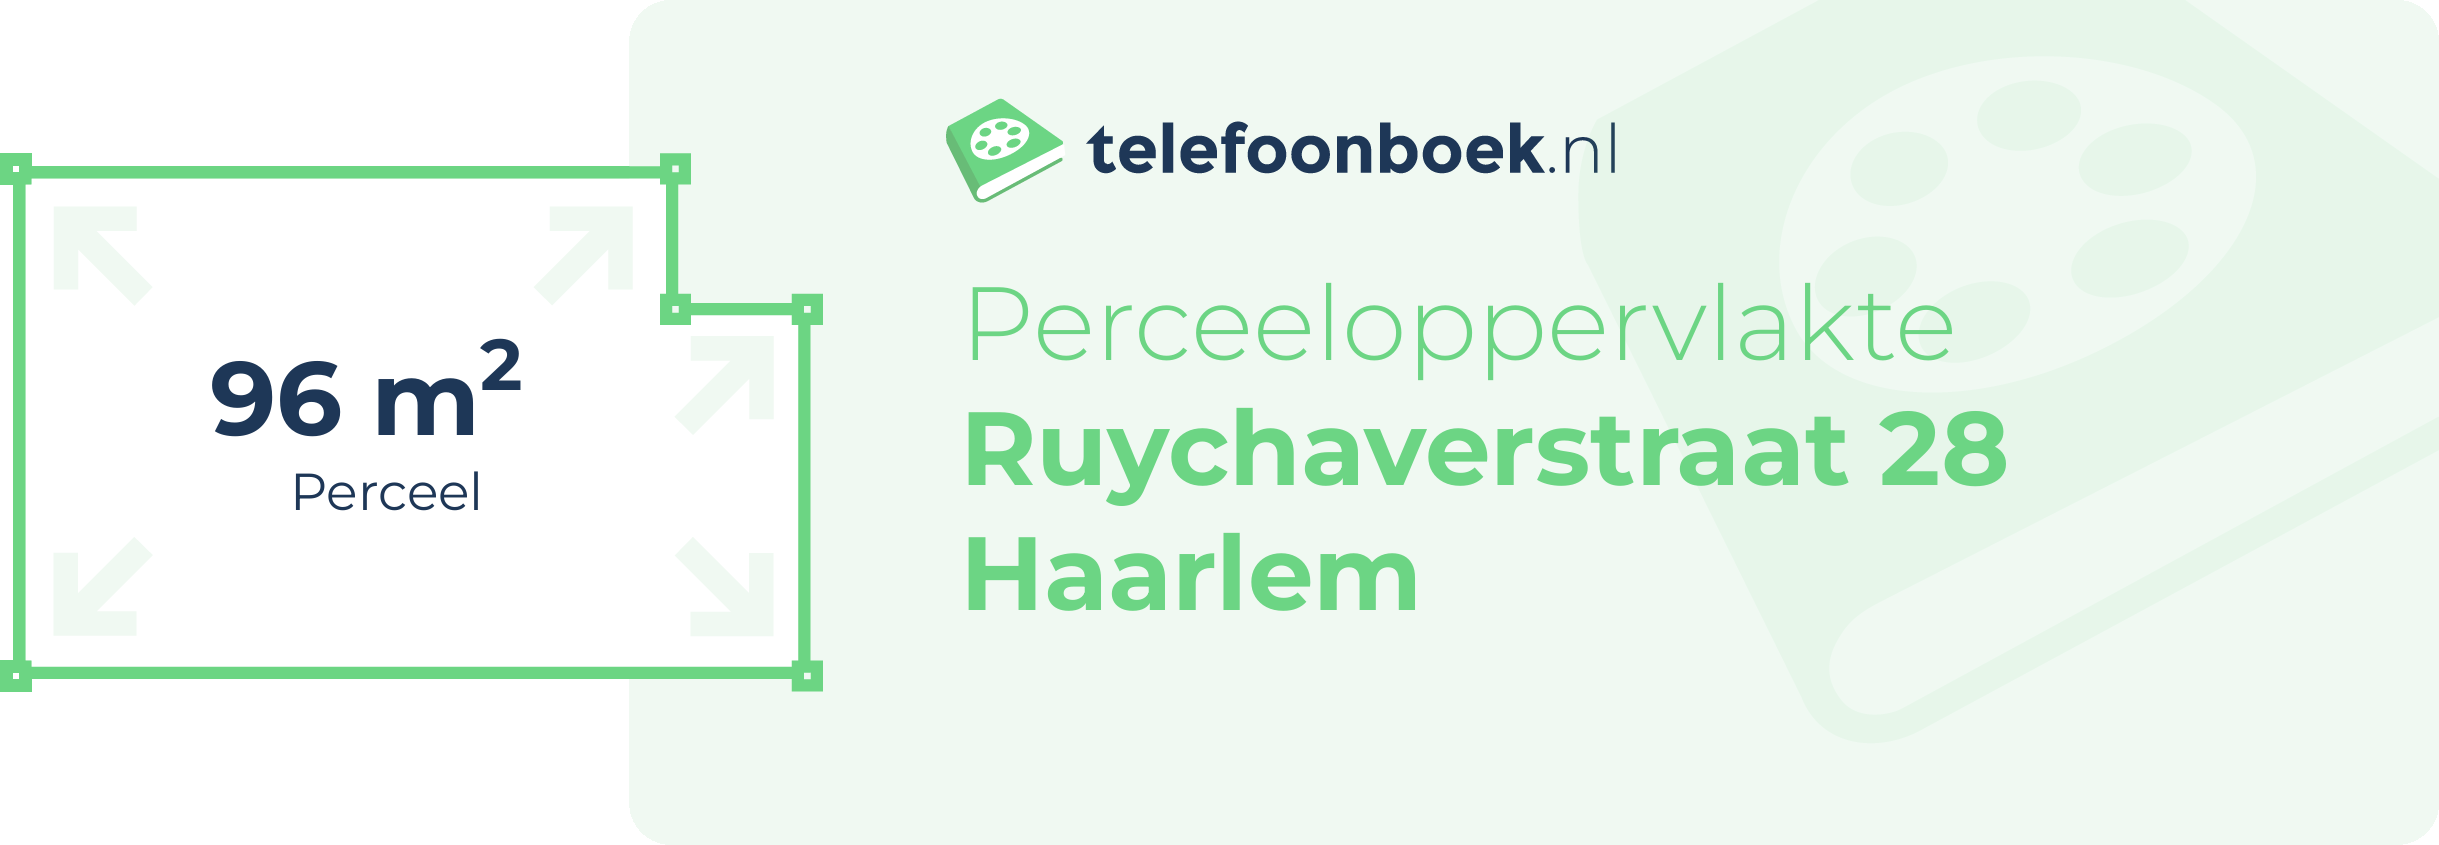 Perceeloppervlakte Ruychaverstraat 28 Haarlem